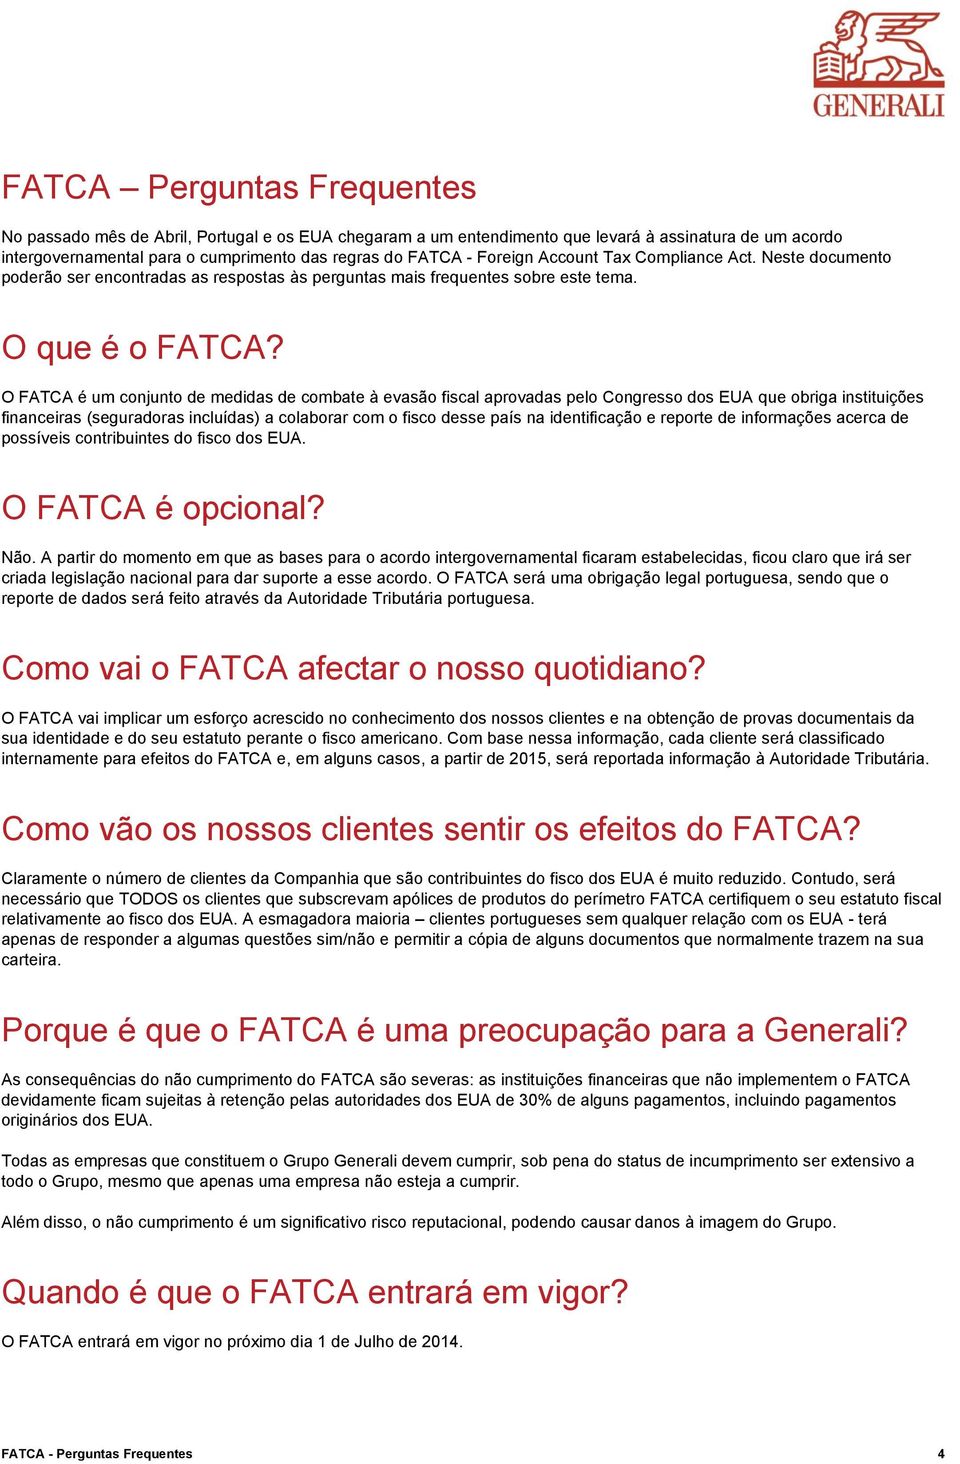 O FATCA é um conjunto de medidas de combate à evasão fiscal aprovadas pelo Congresso dos EUA que obriga instituições financeiras (seguradoras incluídas) a colaborar com o fisco desse país na